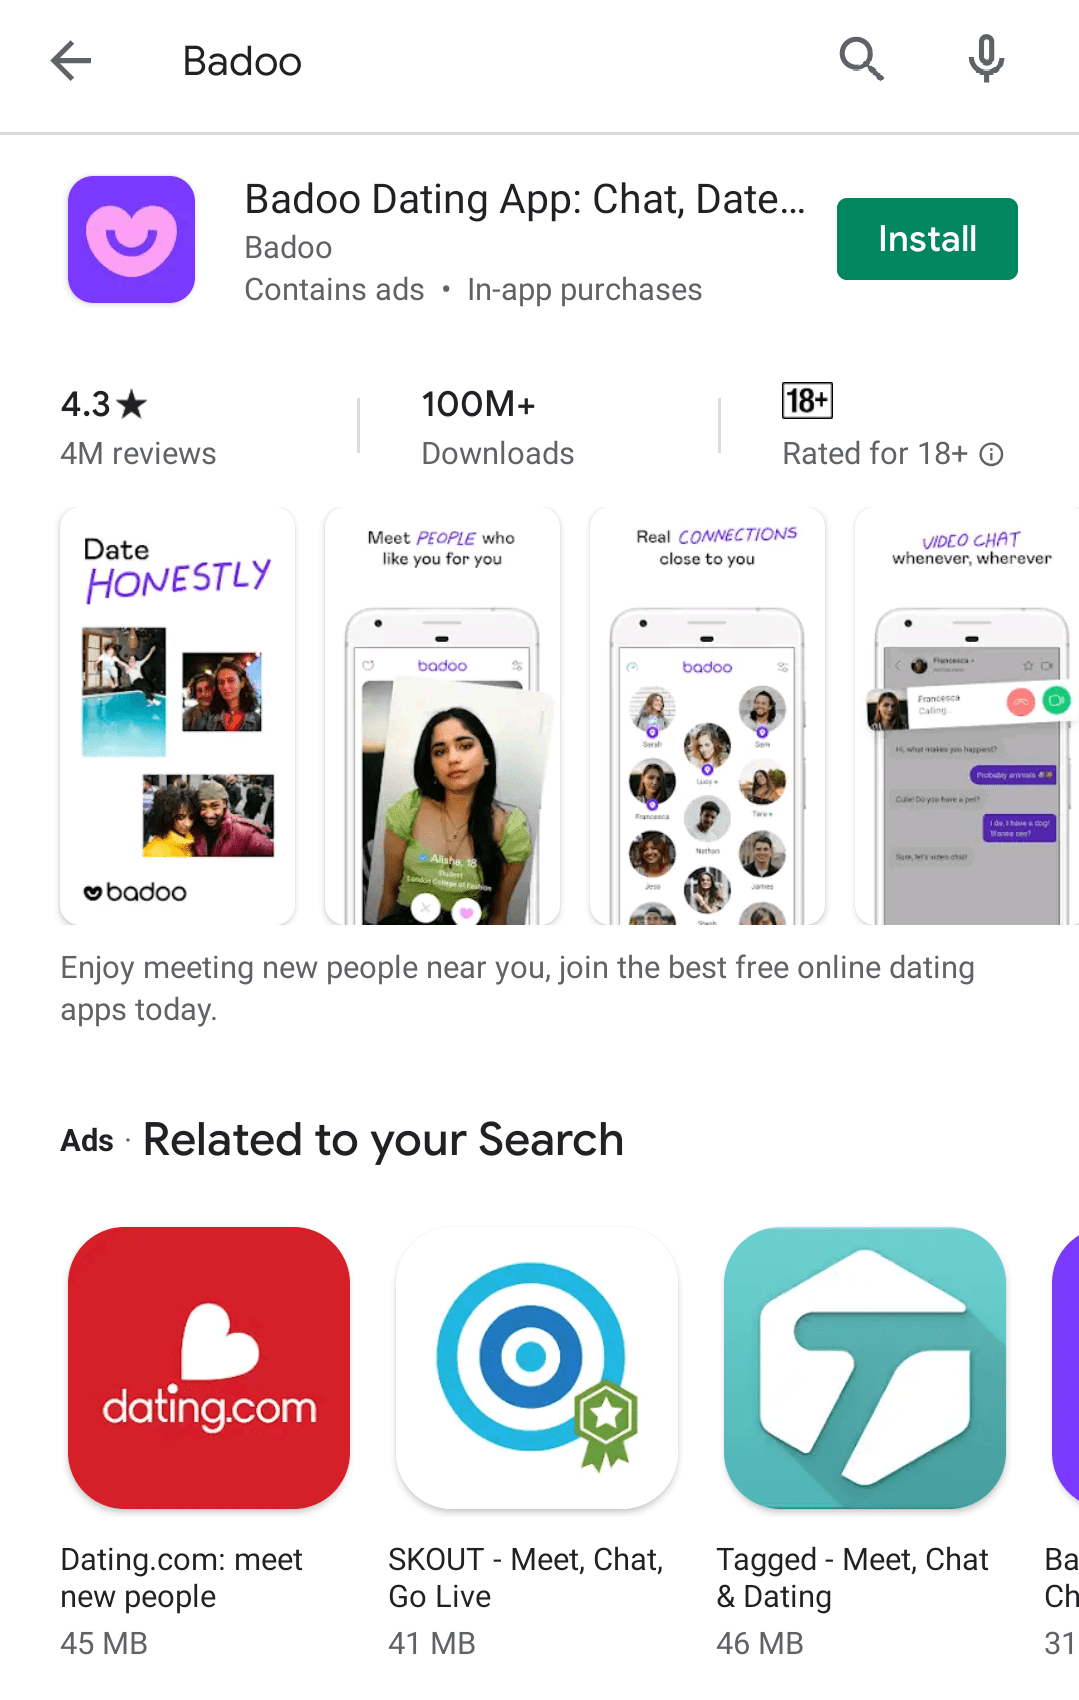 Badoo apps like Most useful